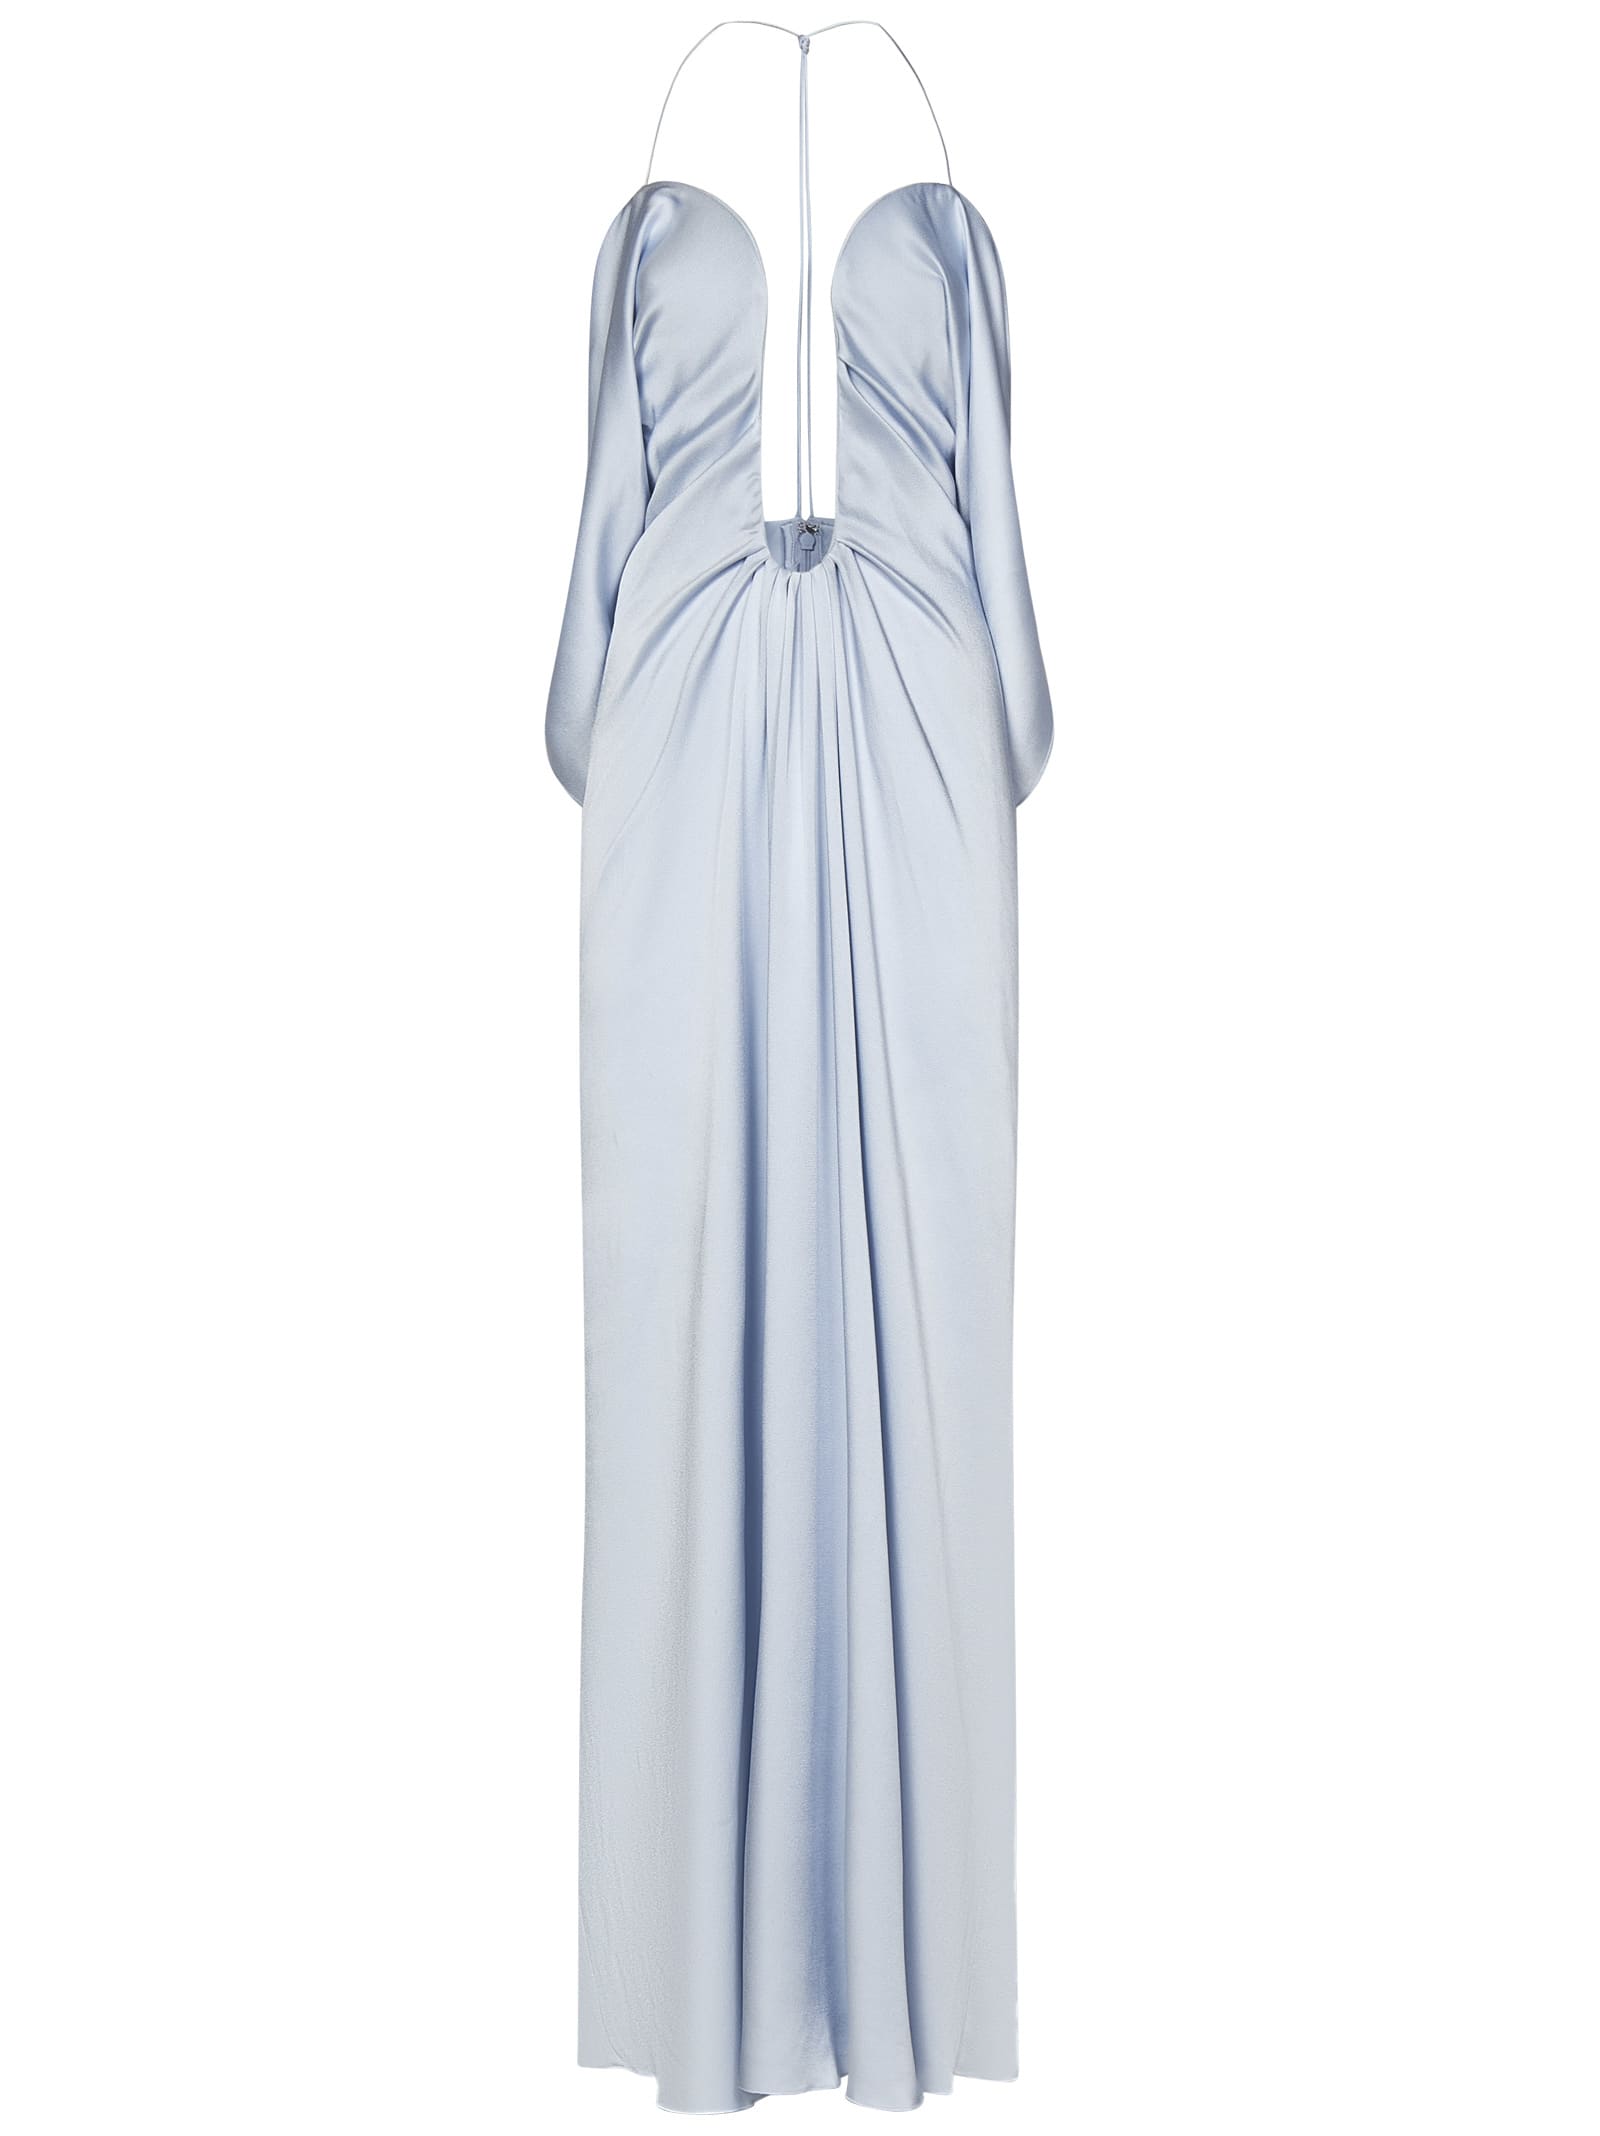 Victoria Beckham Frame Detail Cami Dress Long Dress